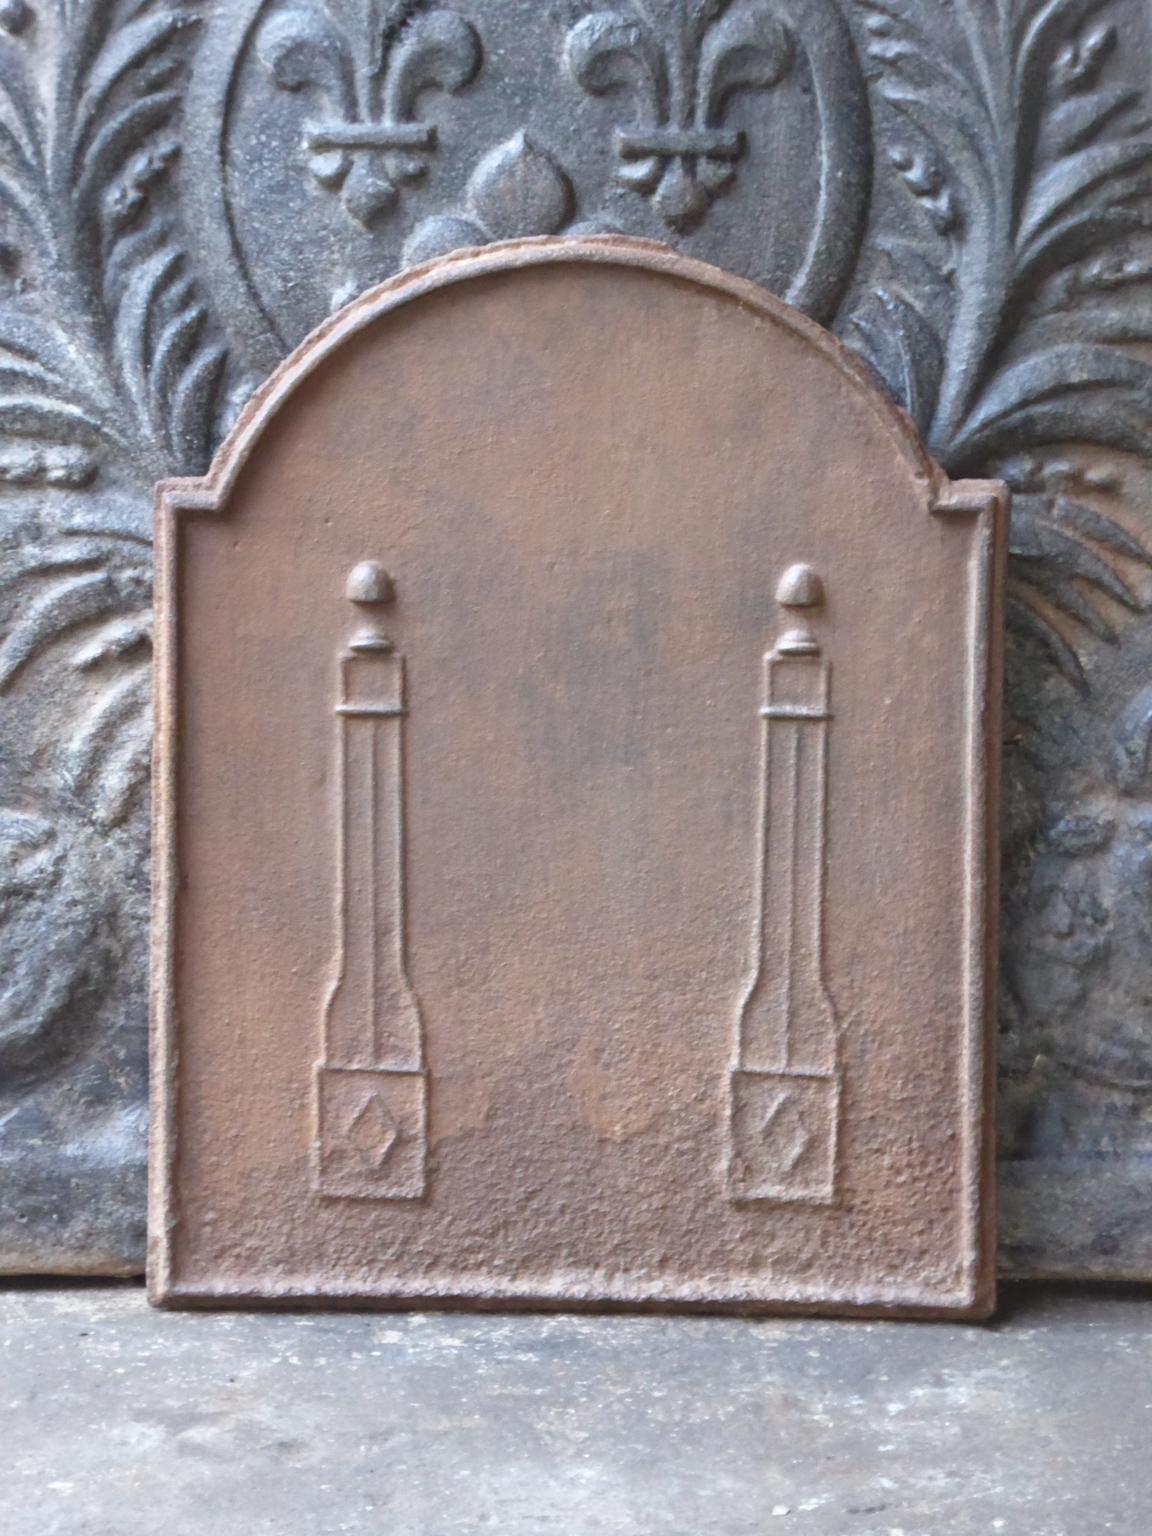 Petite plaque de cheminée néoclassique française du XIXe siècle avec deux piliers de la liberté. Les piliers symbolisent la valeur liberté, l'une des trois valeurs de la Révolution française. 

La plaque de cheminée est en fonte et a une patine